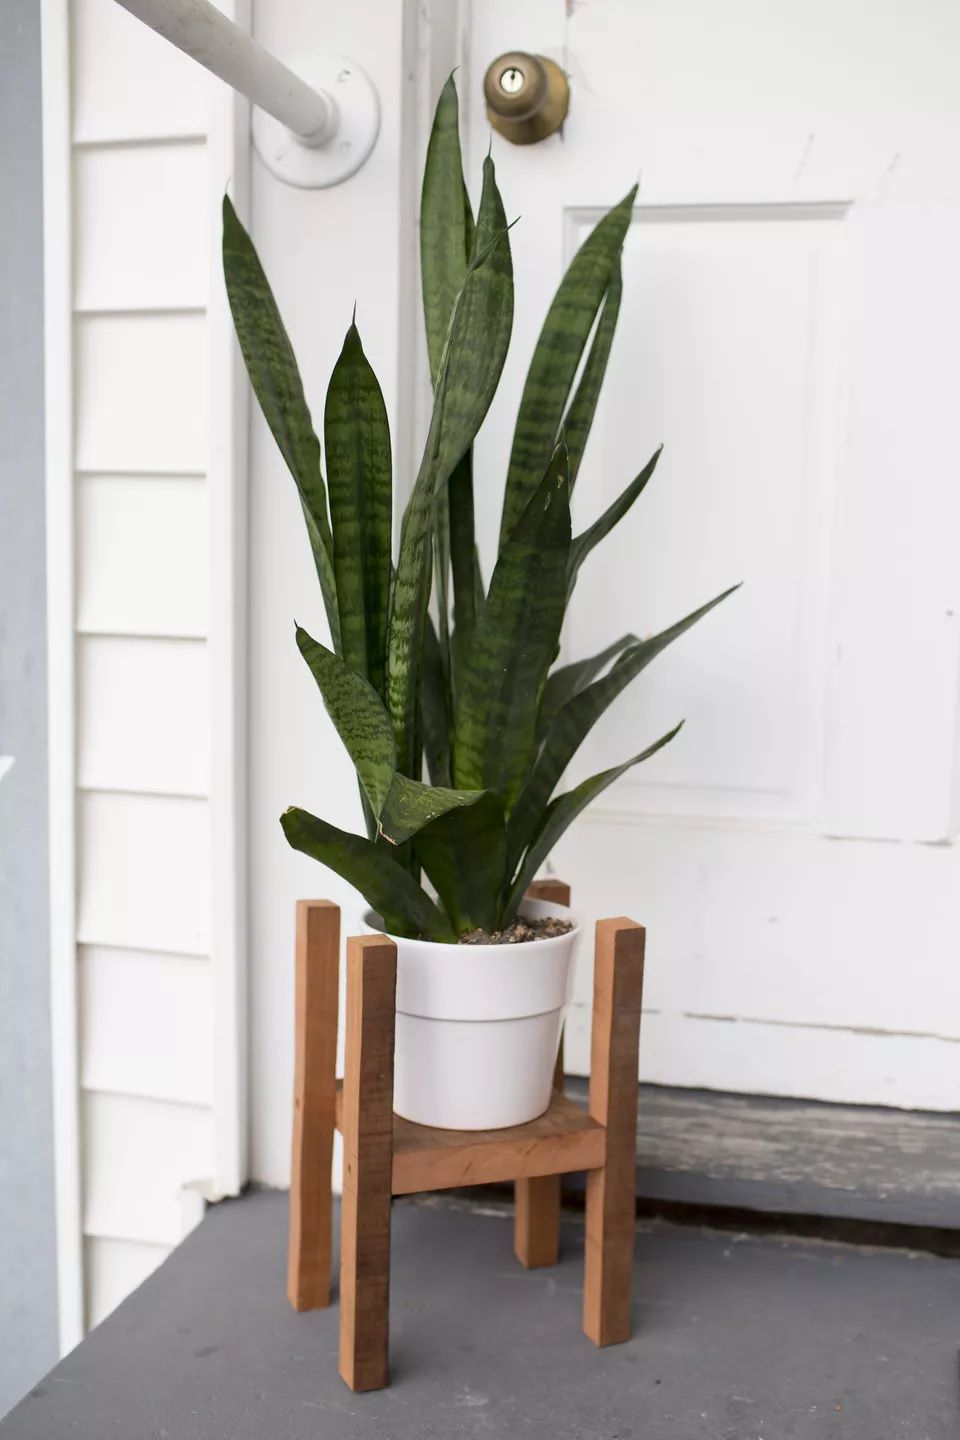 Uma planta cobra verde-escura em um vaso branco em um suporte de madeira.